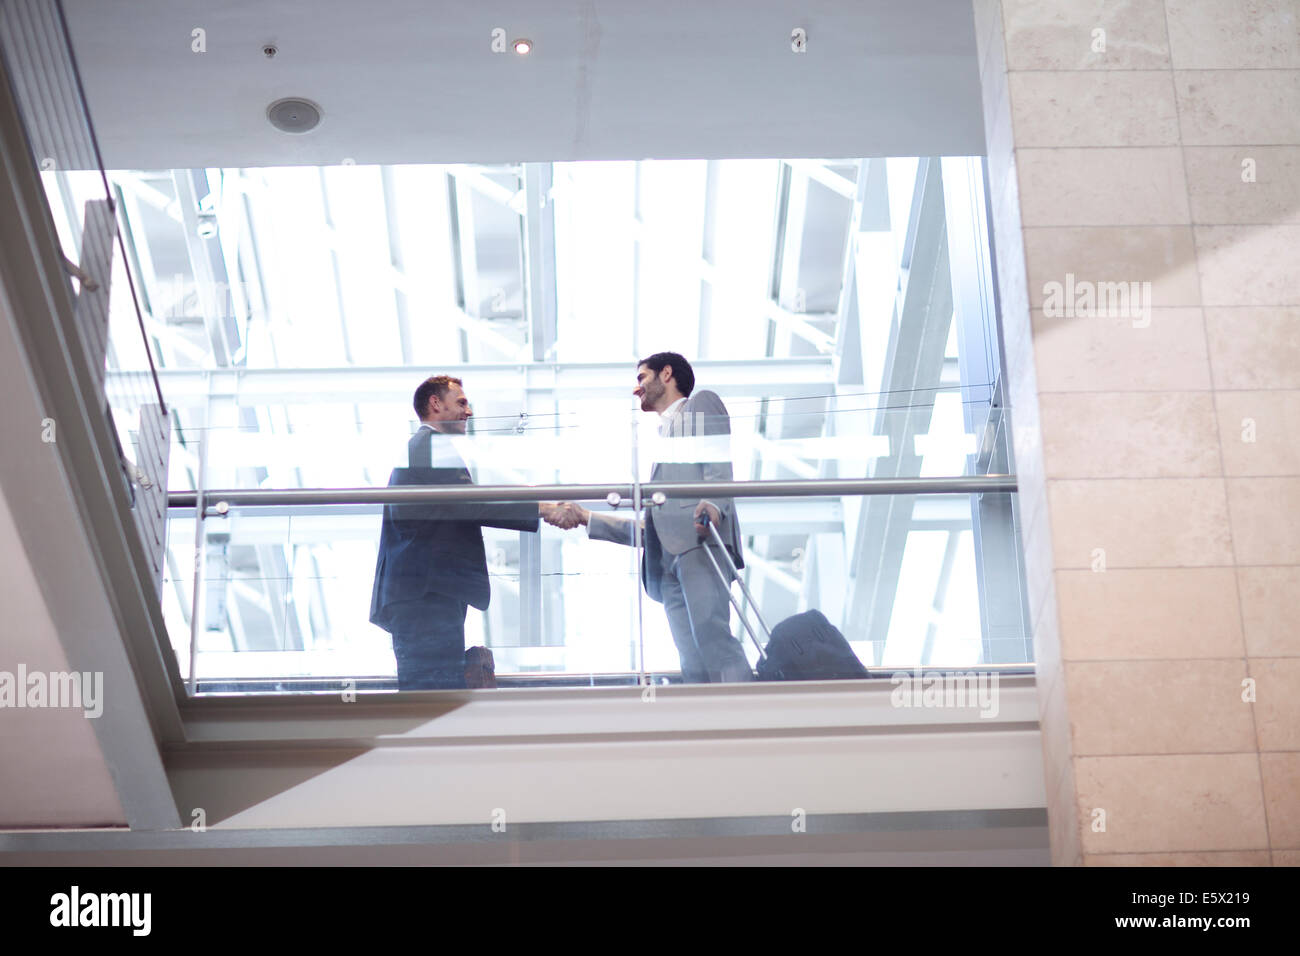 Deux jeunes businessmen shaking hands on conference centre balcon Banque D'Images